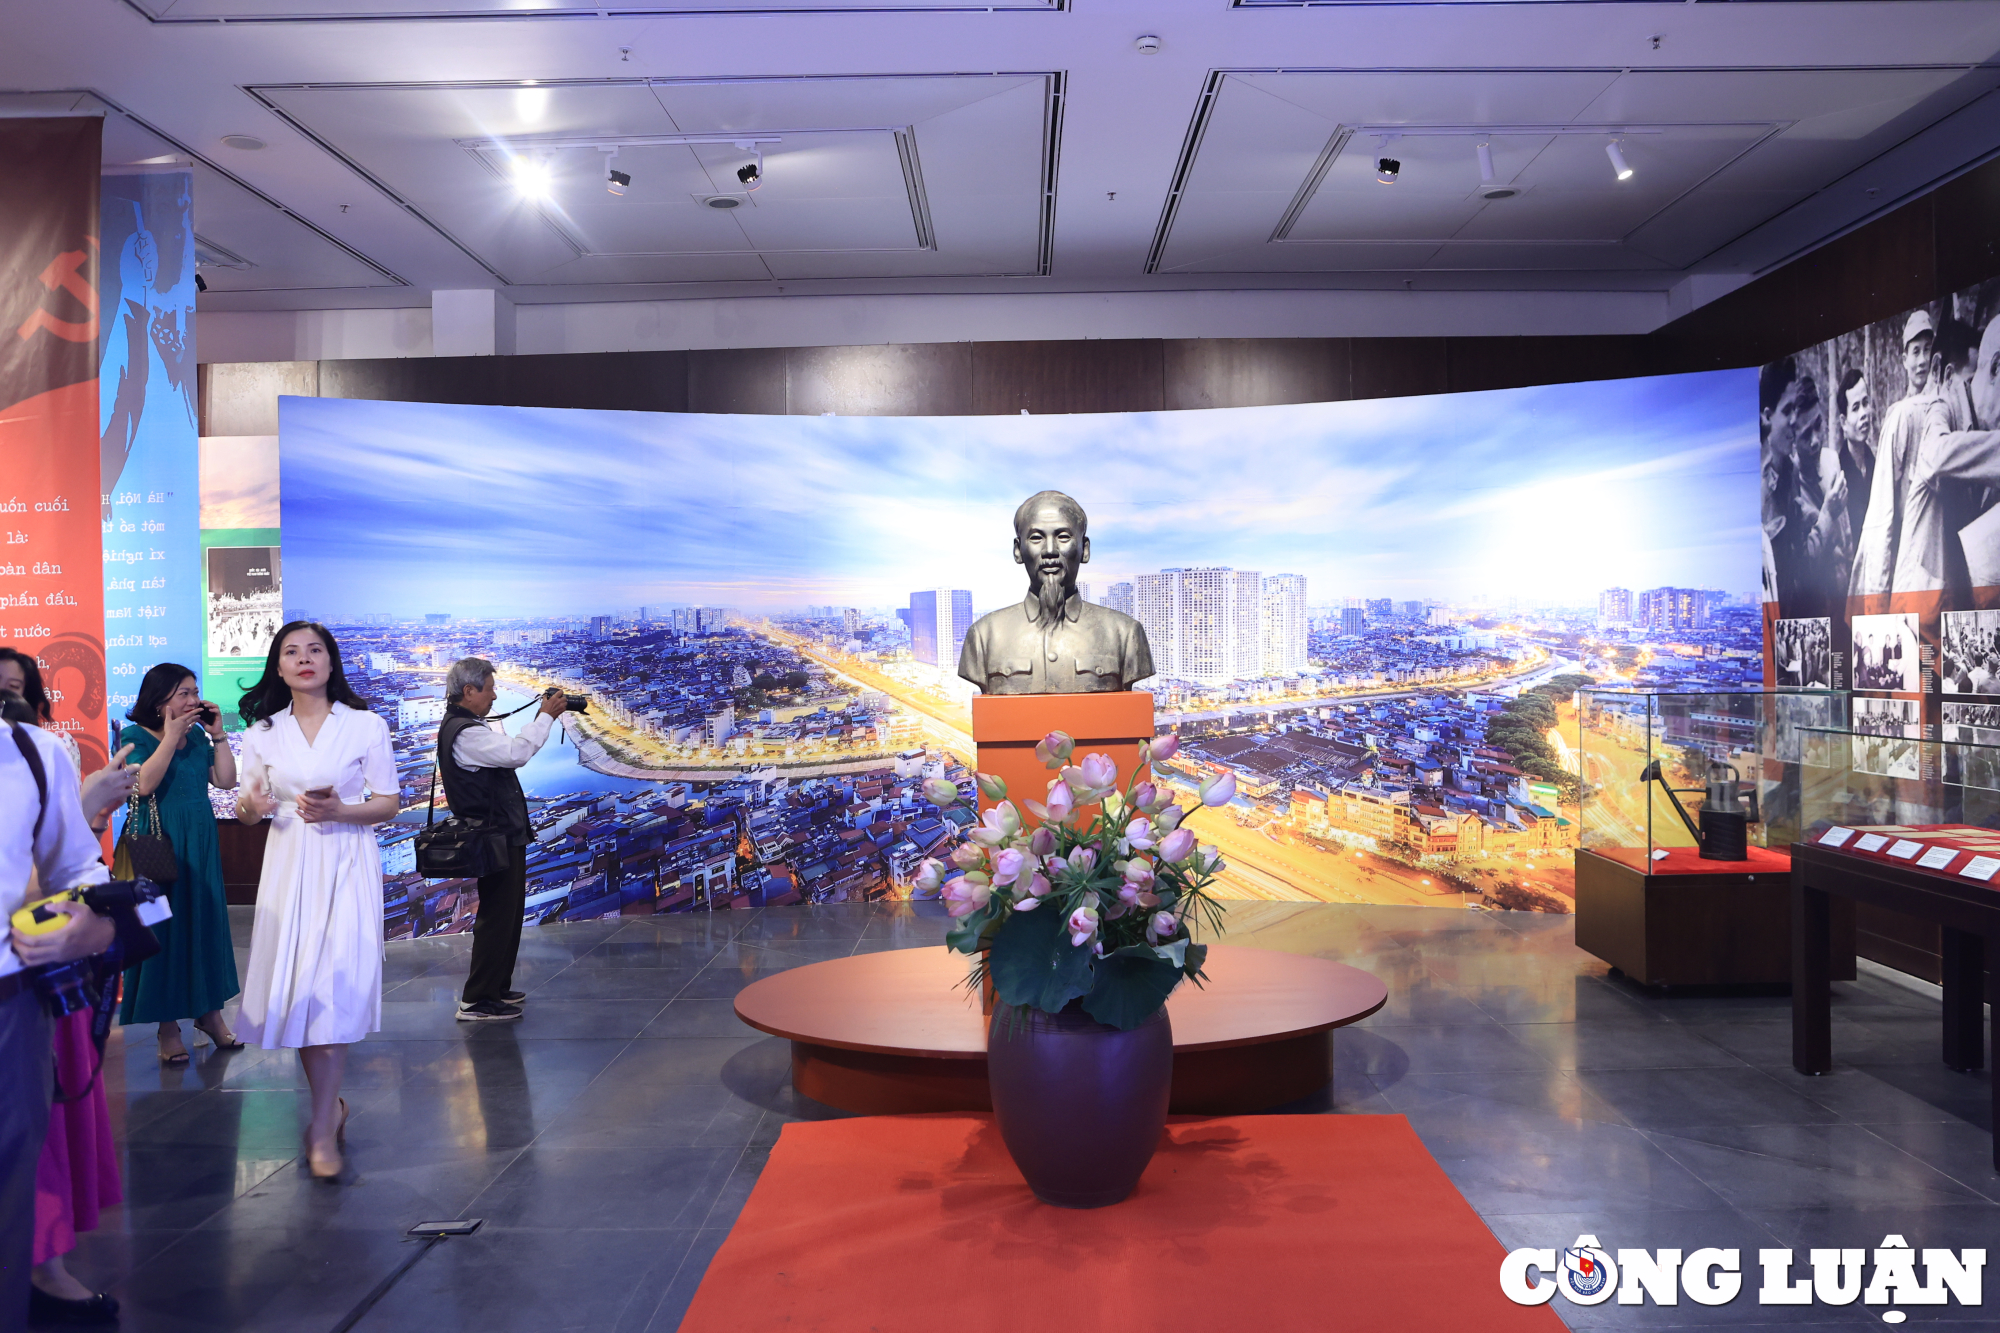 Tượng Bác Hồ được đặt tại không gian trưng bày chuyên đề "Bác Hồ với Thủ đô Hà Nội" và Không gian nghệ thuật "Sen thư pháp".